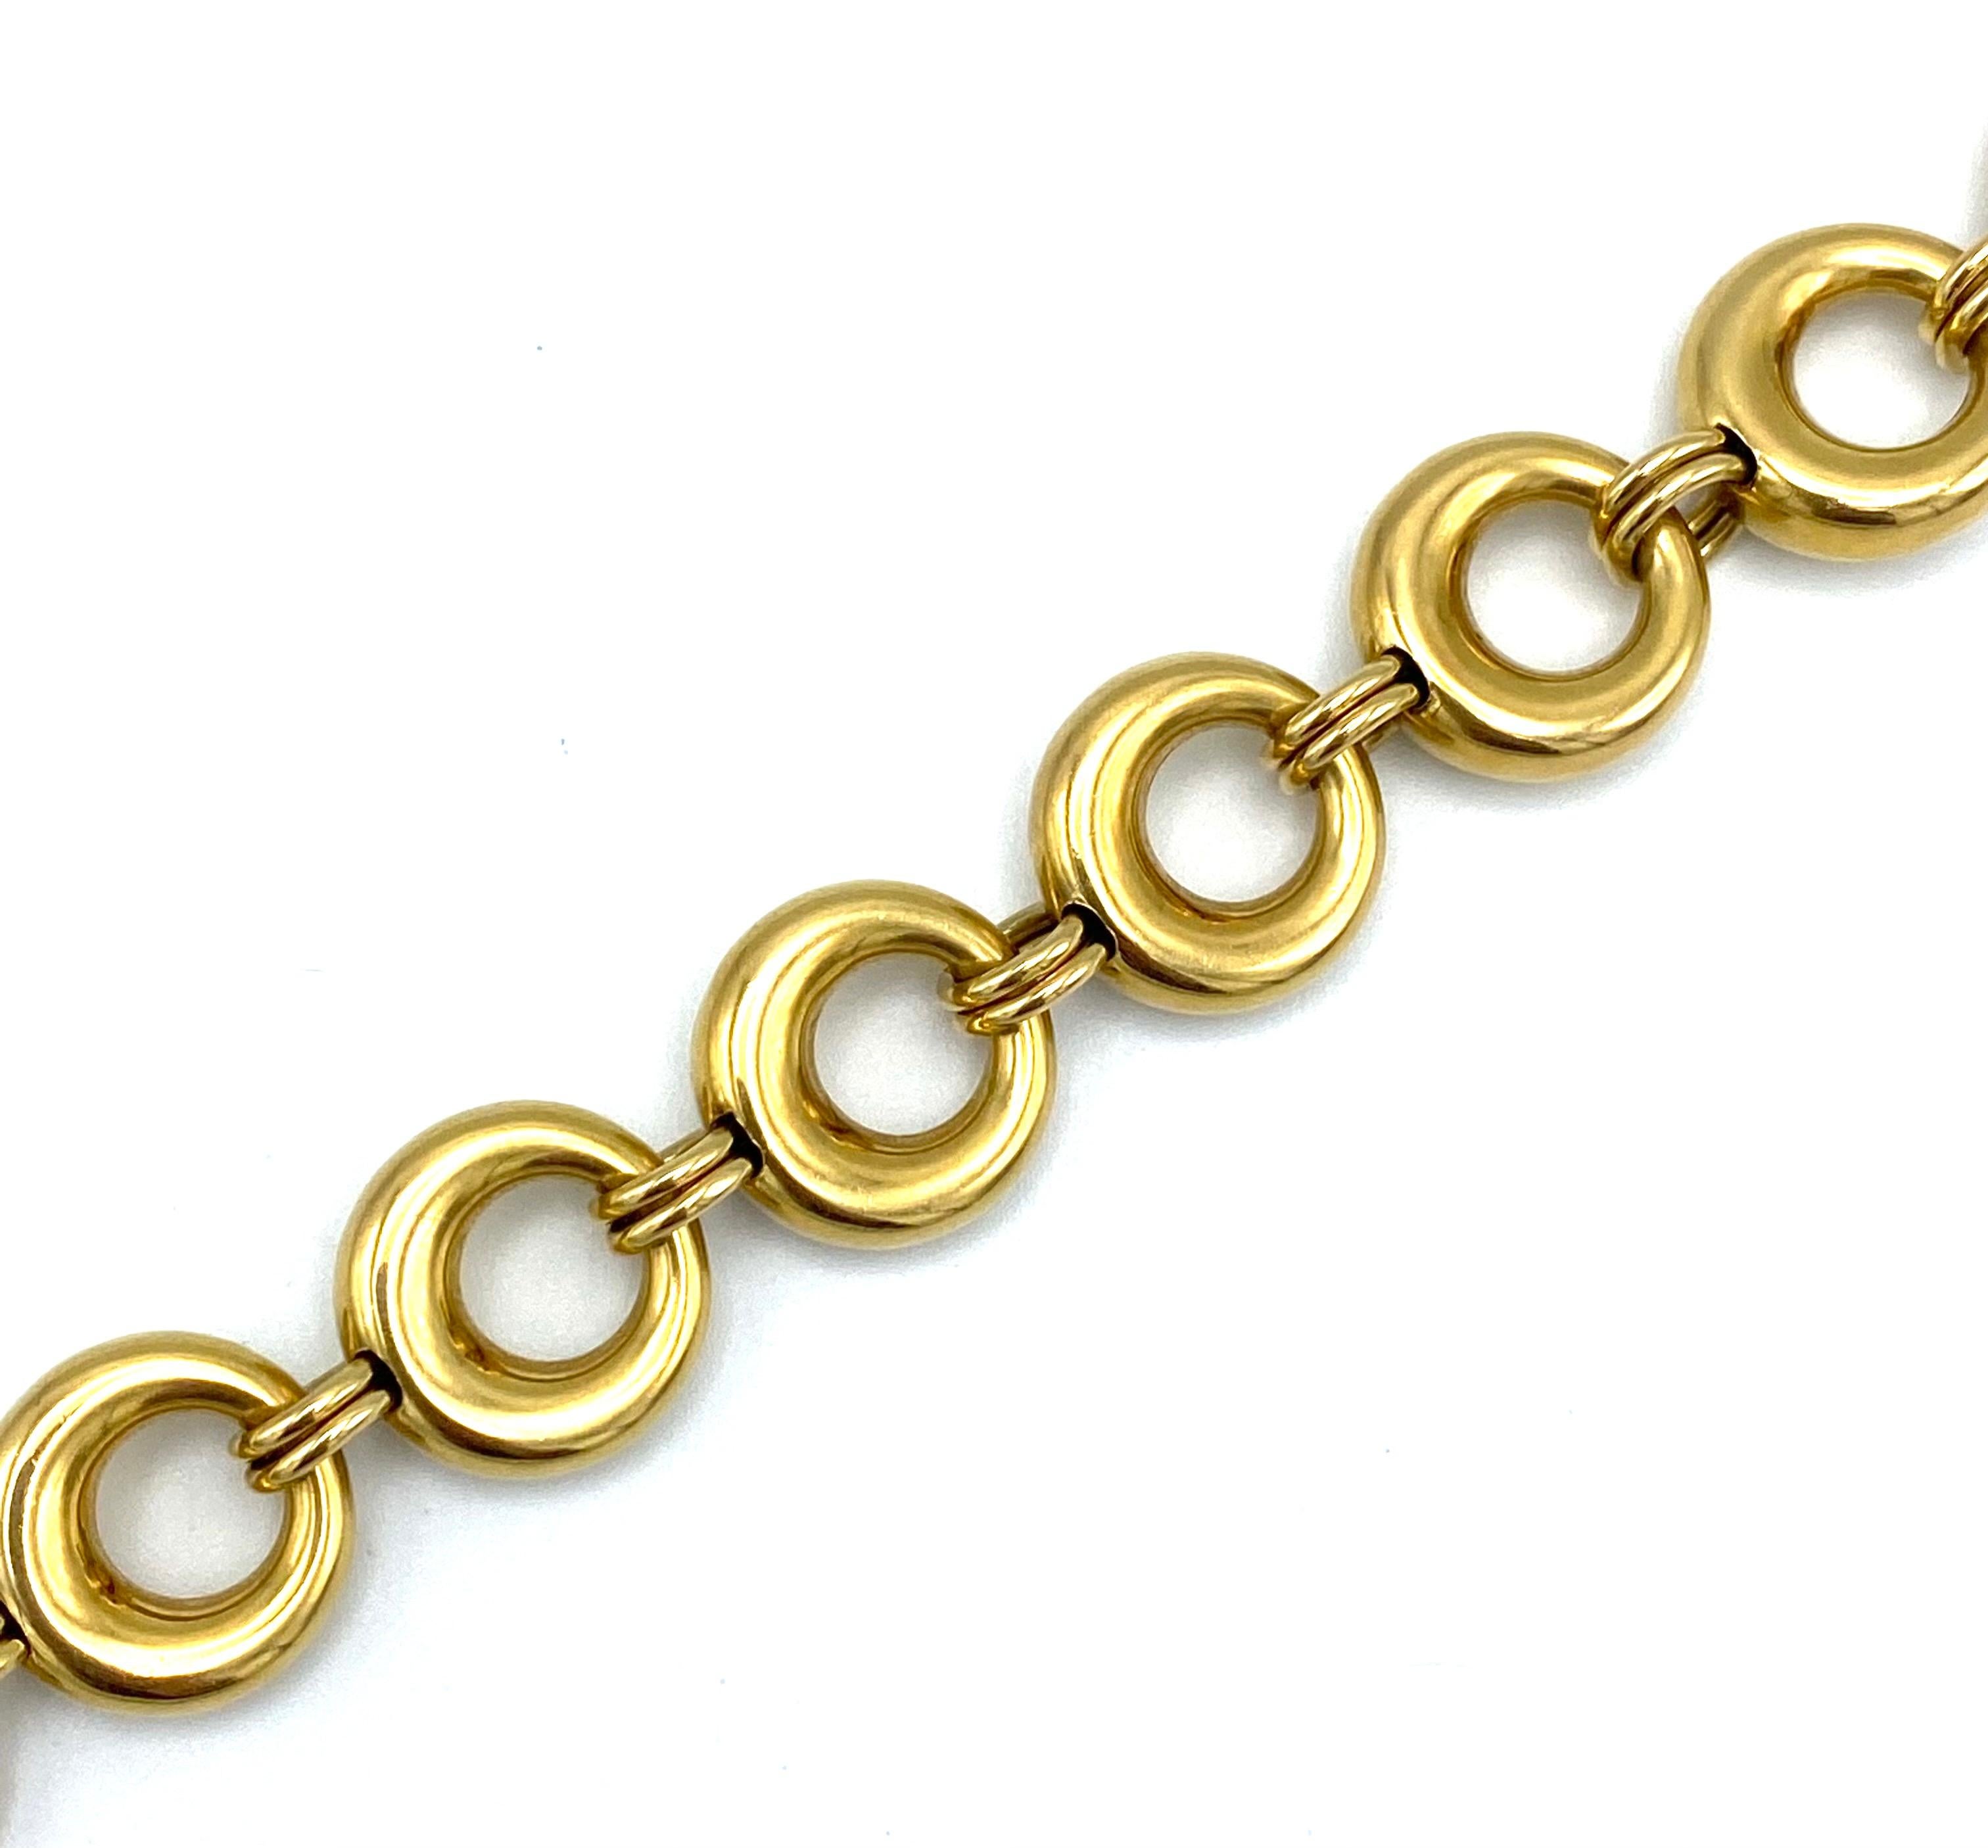 Vintage Chaumet Paris Yellow Gold Link Bracelet and Necklace Set For Sale 1